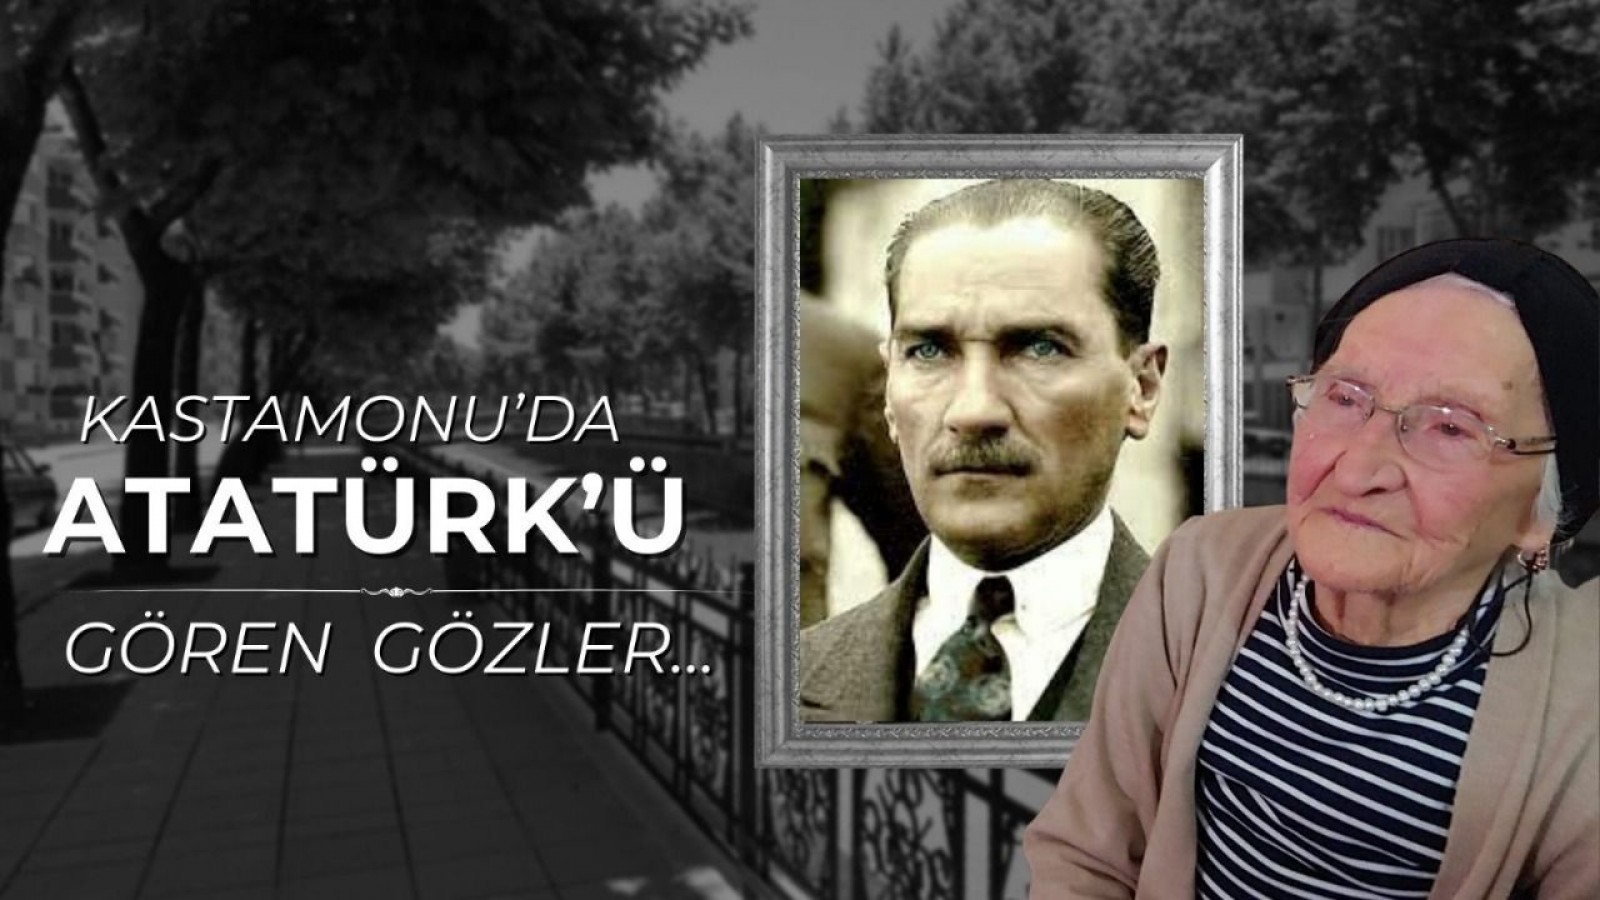 Kastamonu'nun 'Atatürk'ü gören' gözleri...;